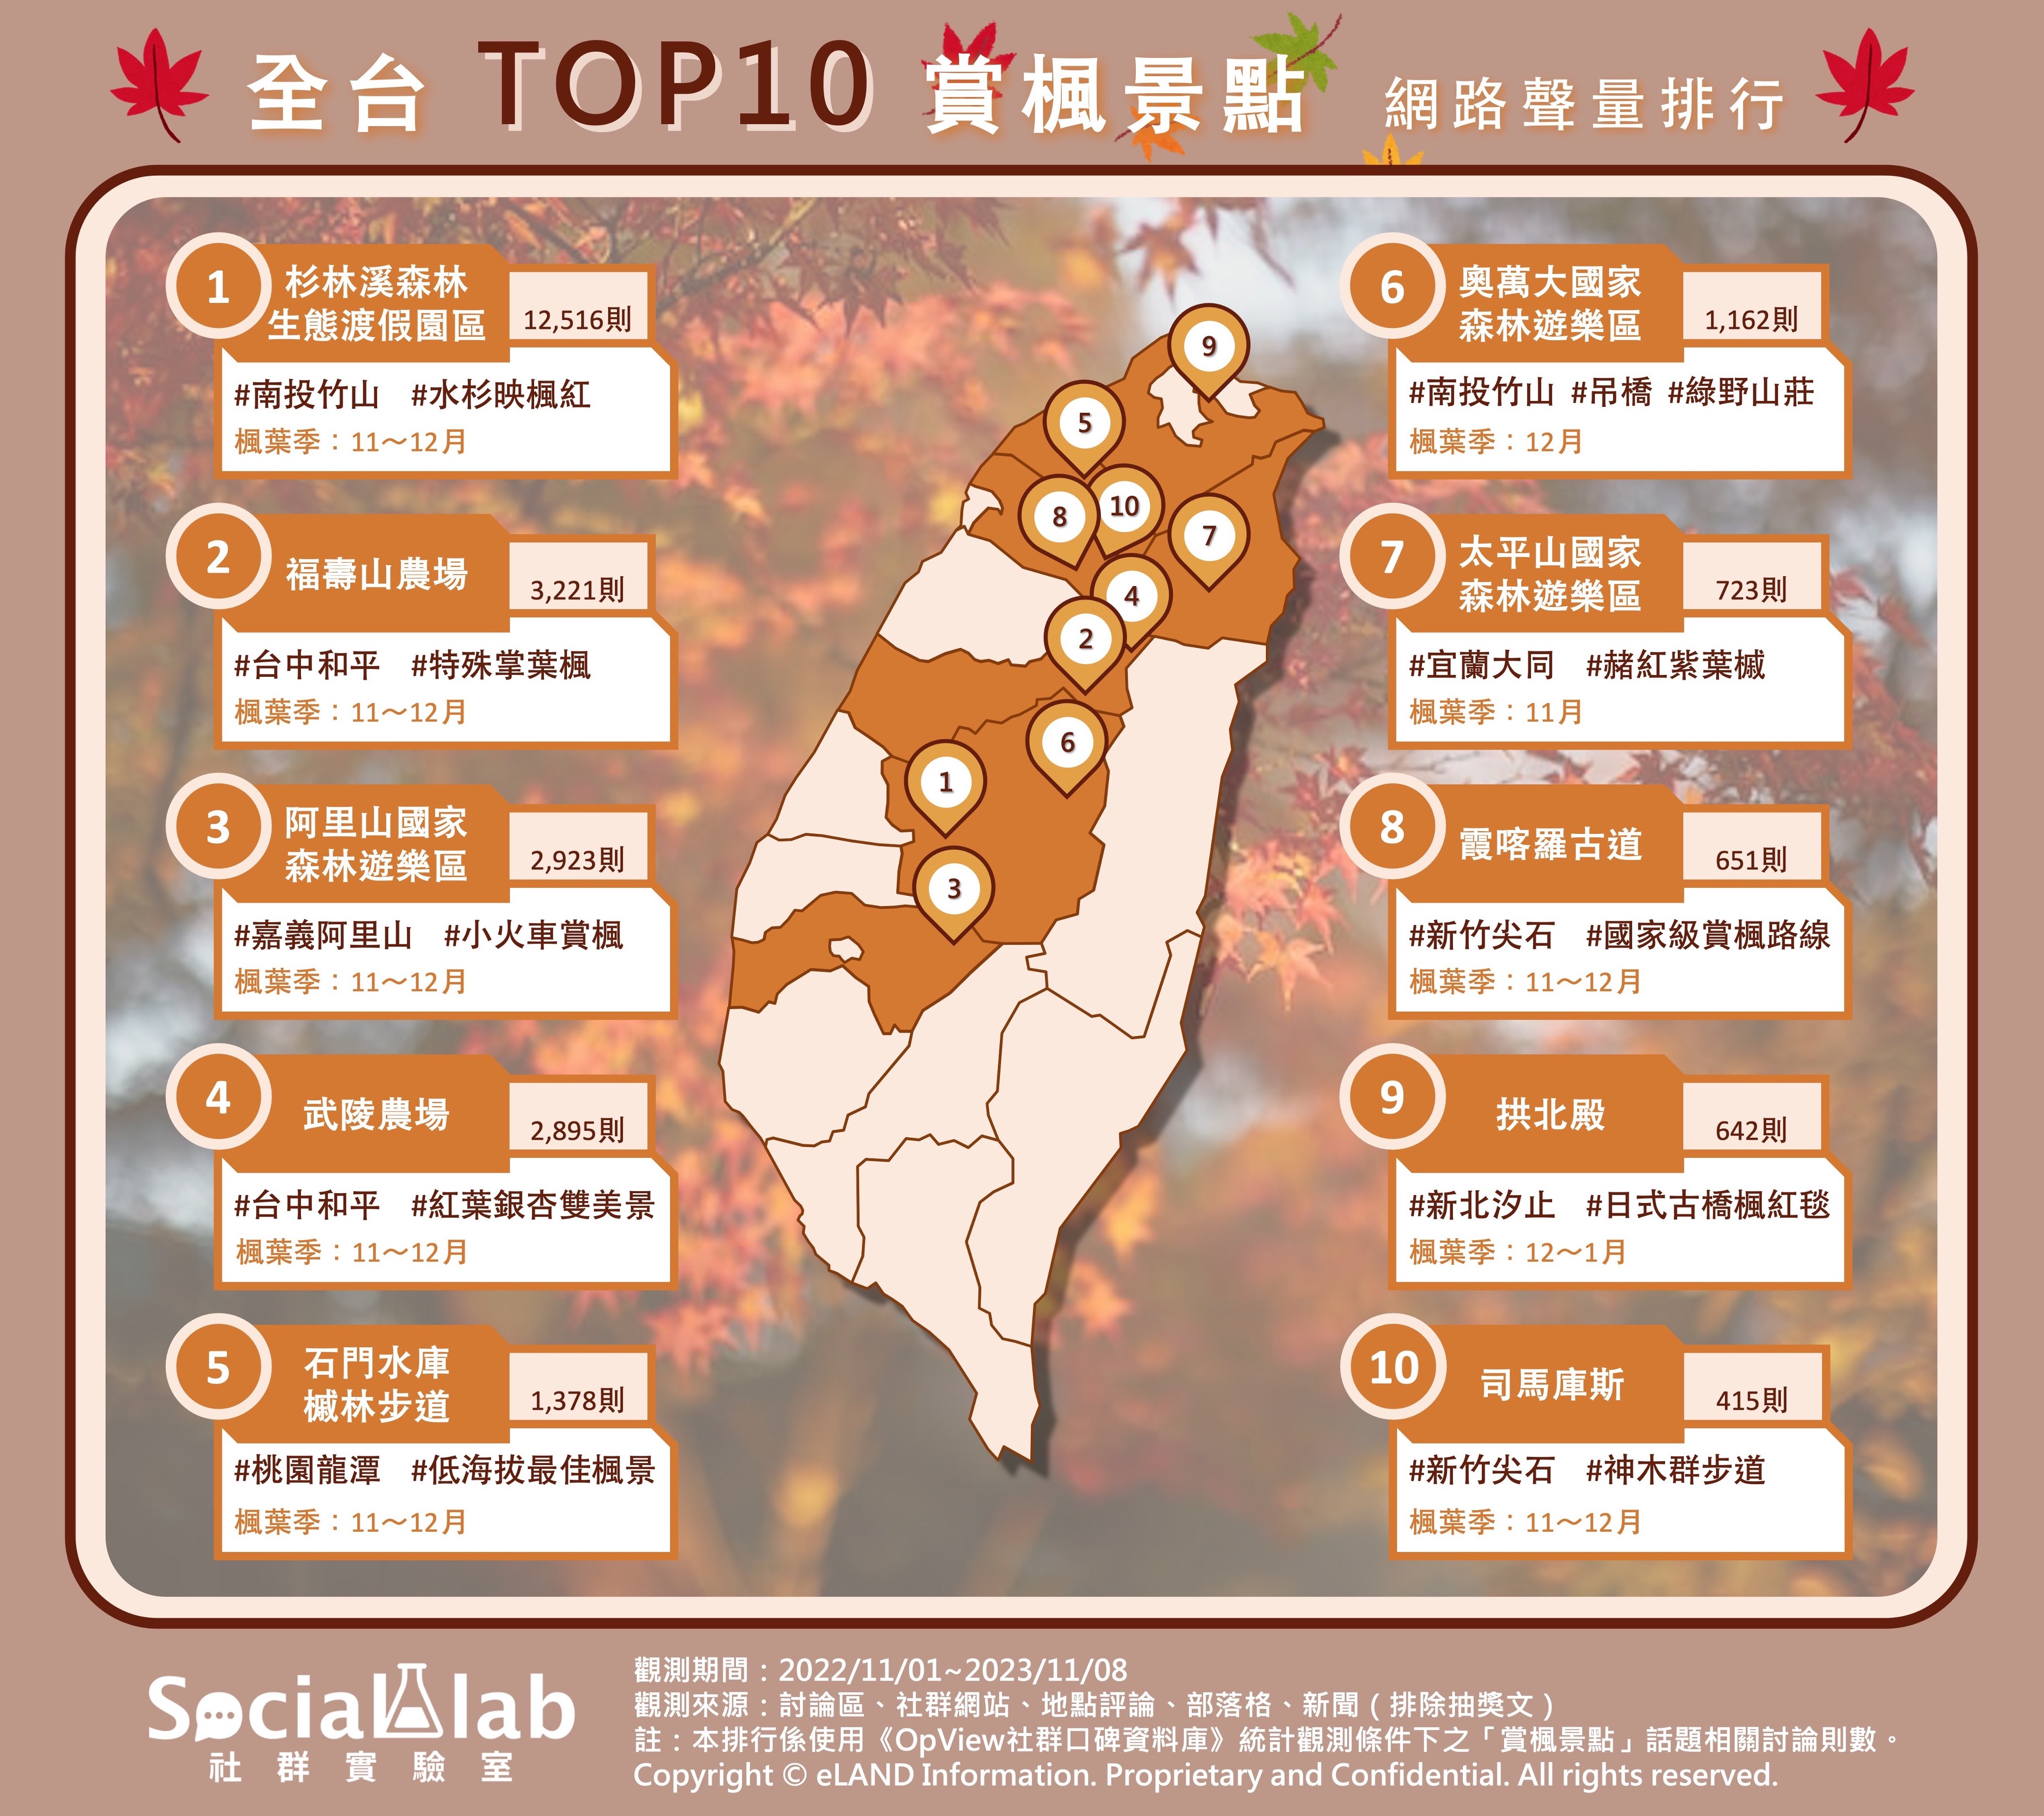 全台TOP10賞楓景點 網路聲量排行